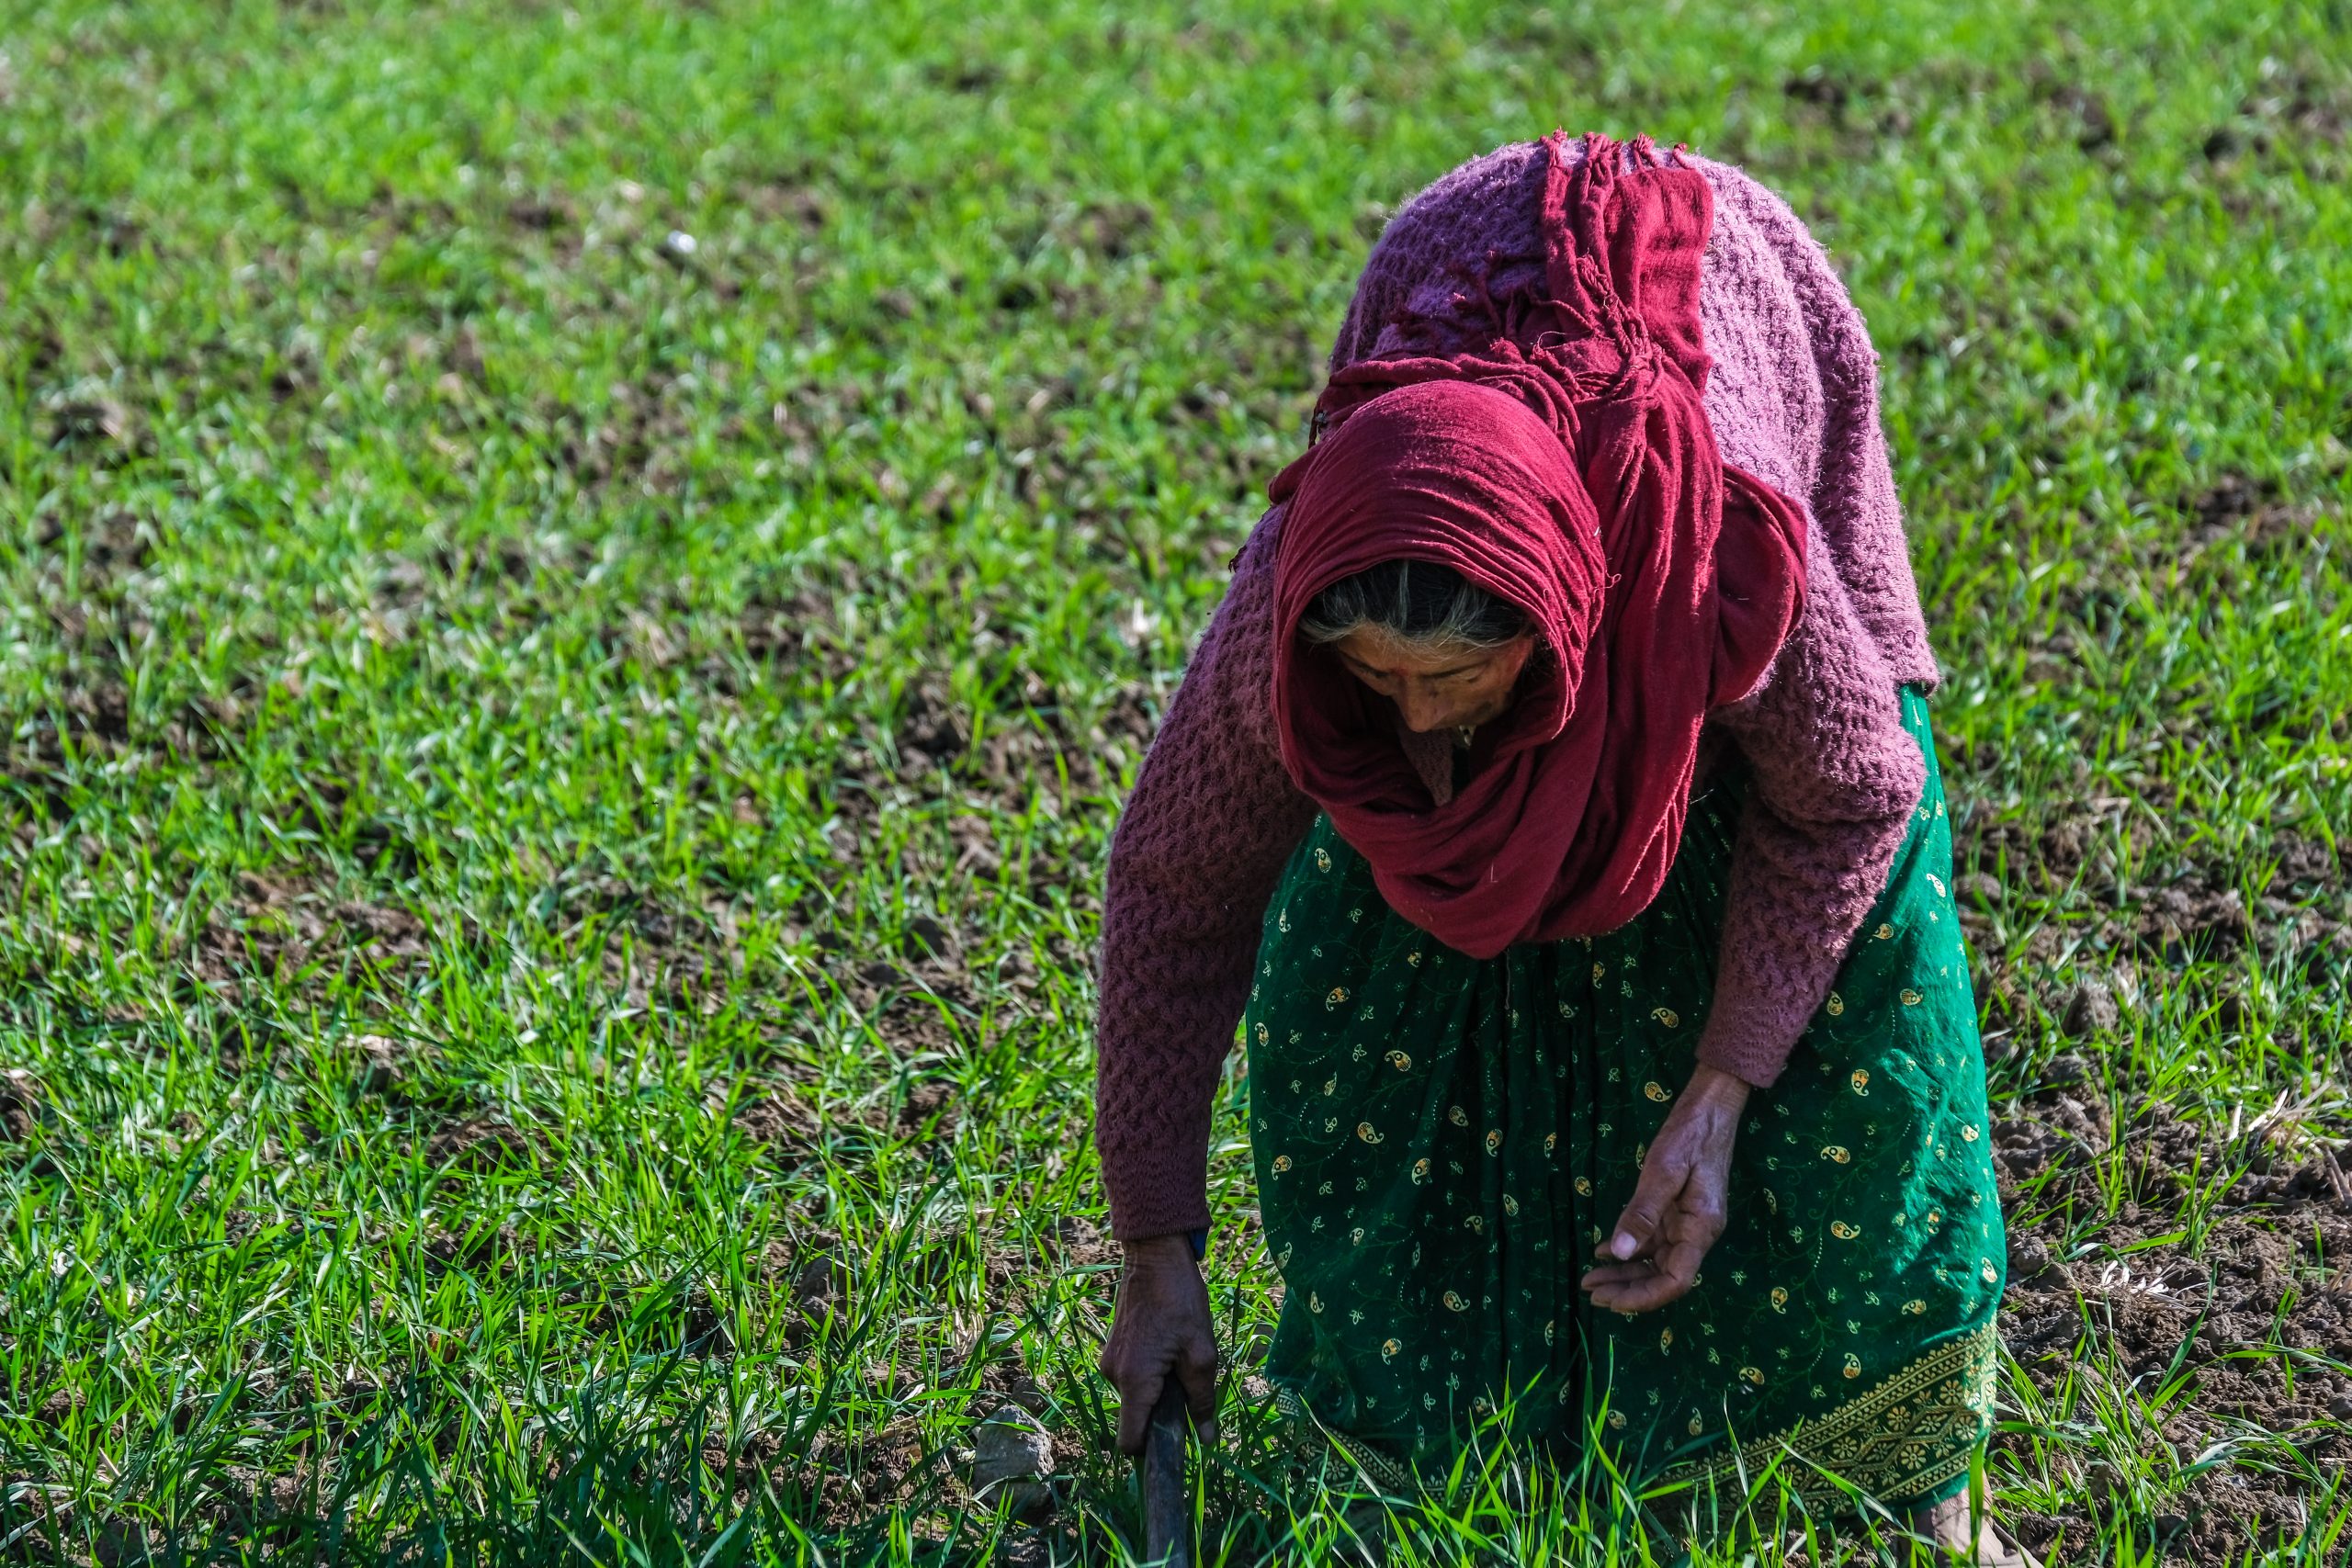 A lady farmer in field